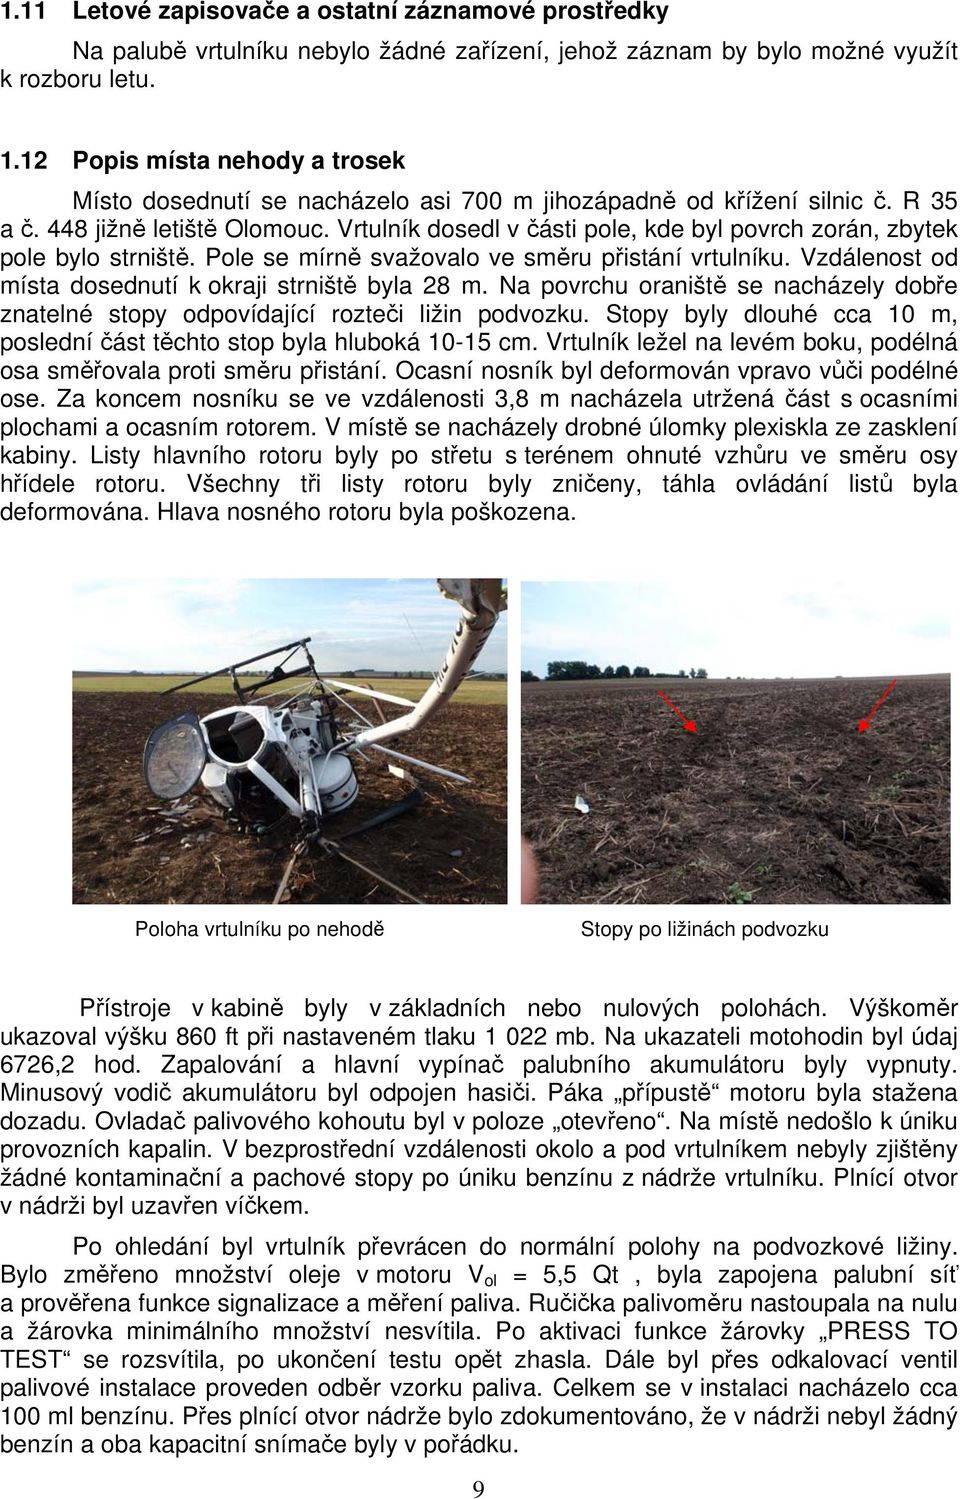 Vrtulník dosedl v části pole, kde byl povrch zorán, zbytek pole bylo strniště. Pole se mírně svažovalo ve směru přistání vrtulníku. Vzdálenost od místa dosednutí k okraji strniště byla 28 m.